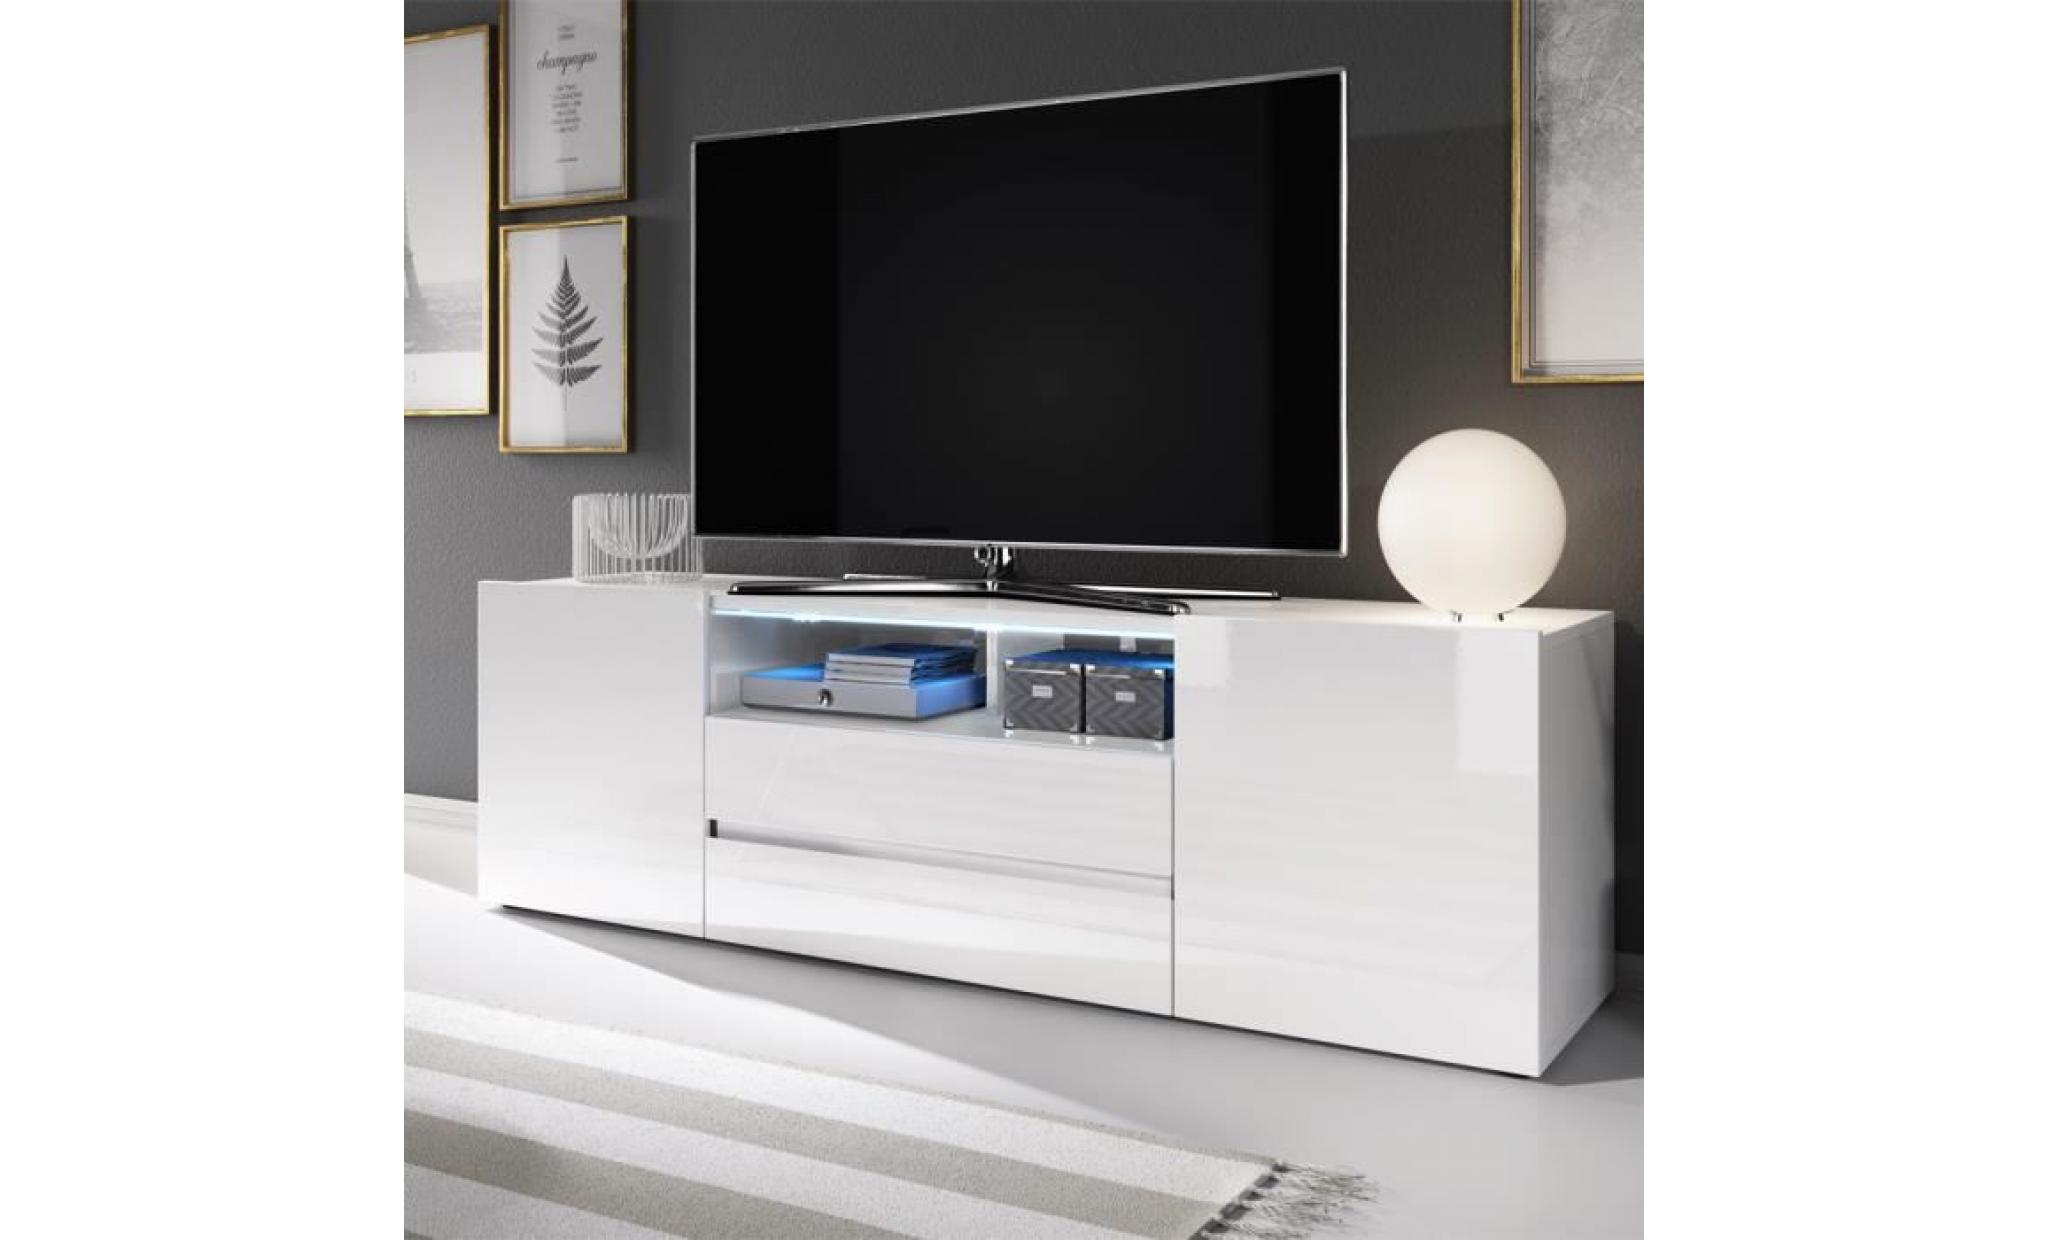 meuble tv / meuble de salon   bros   137 cm   blanc mat / blanc brillant   sans led   2 niches ouvertes   4 compartiments fermés